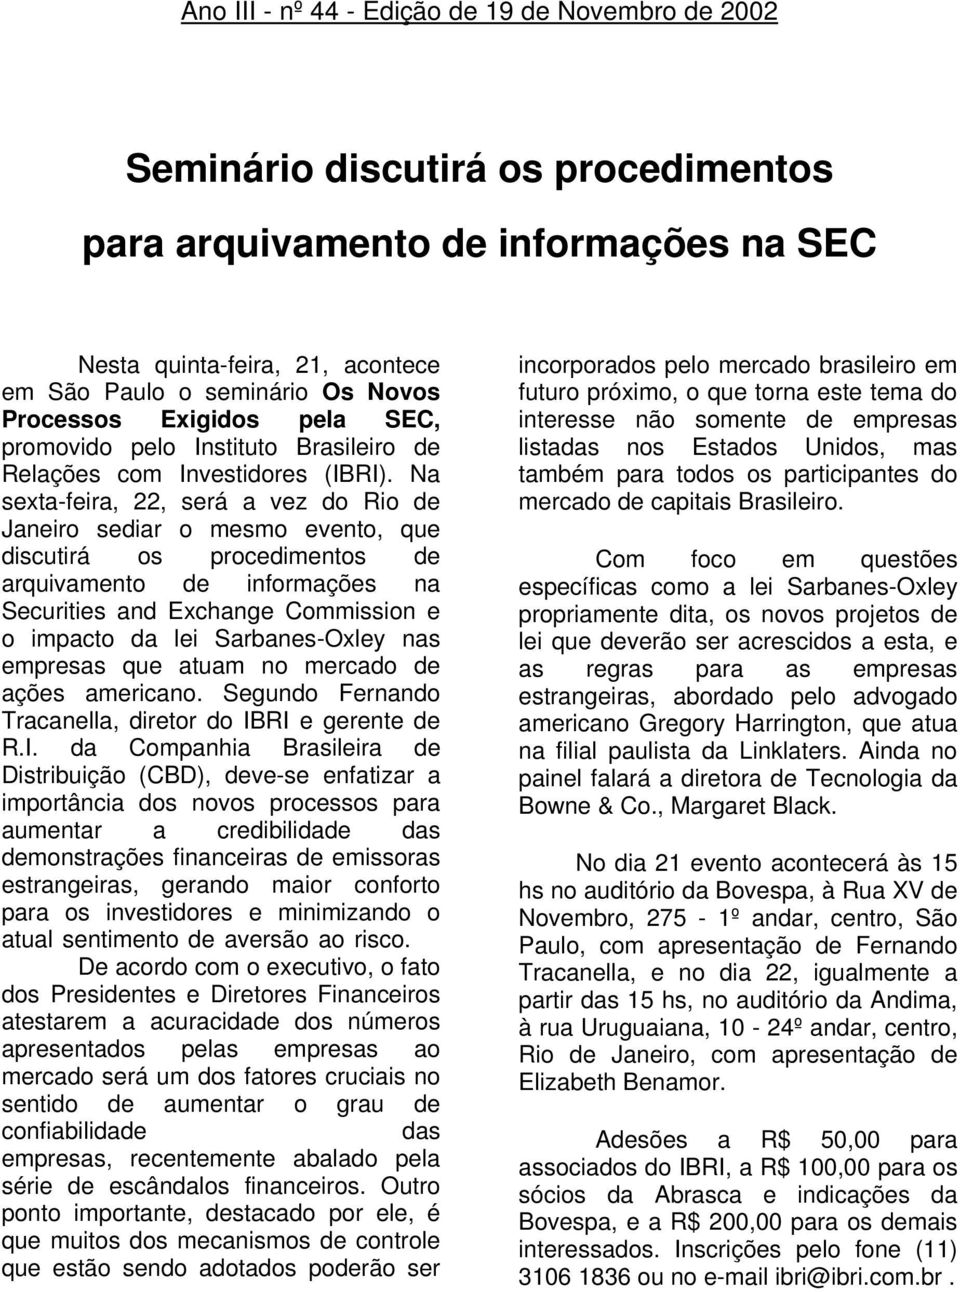 Na sexta-feira, 22, será a vez do Rio de Janeiro sediar o mesmo evento, que discutirá os procedimentos de arquivamento de informações na Securities and Exchange Commission e o impacto da lei